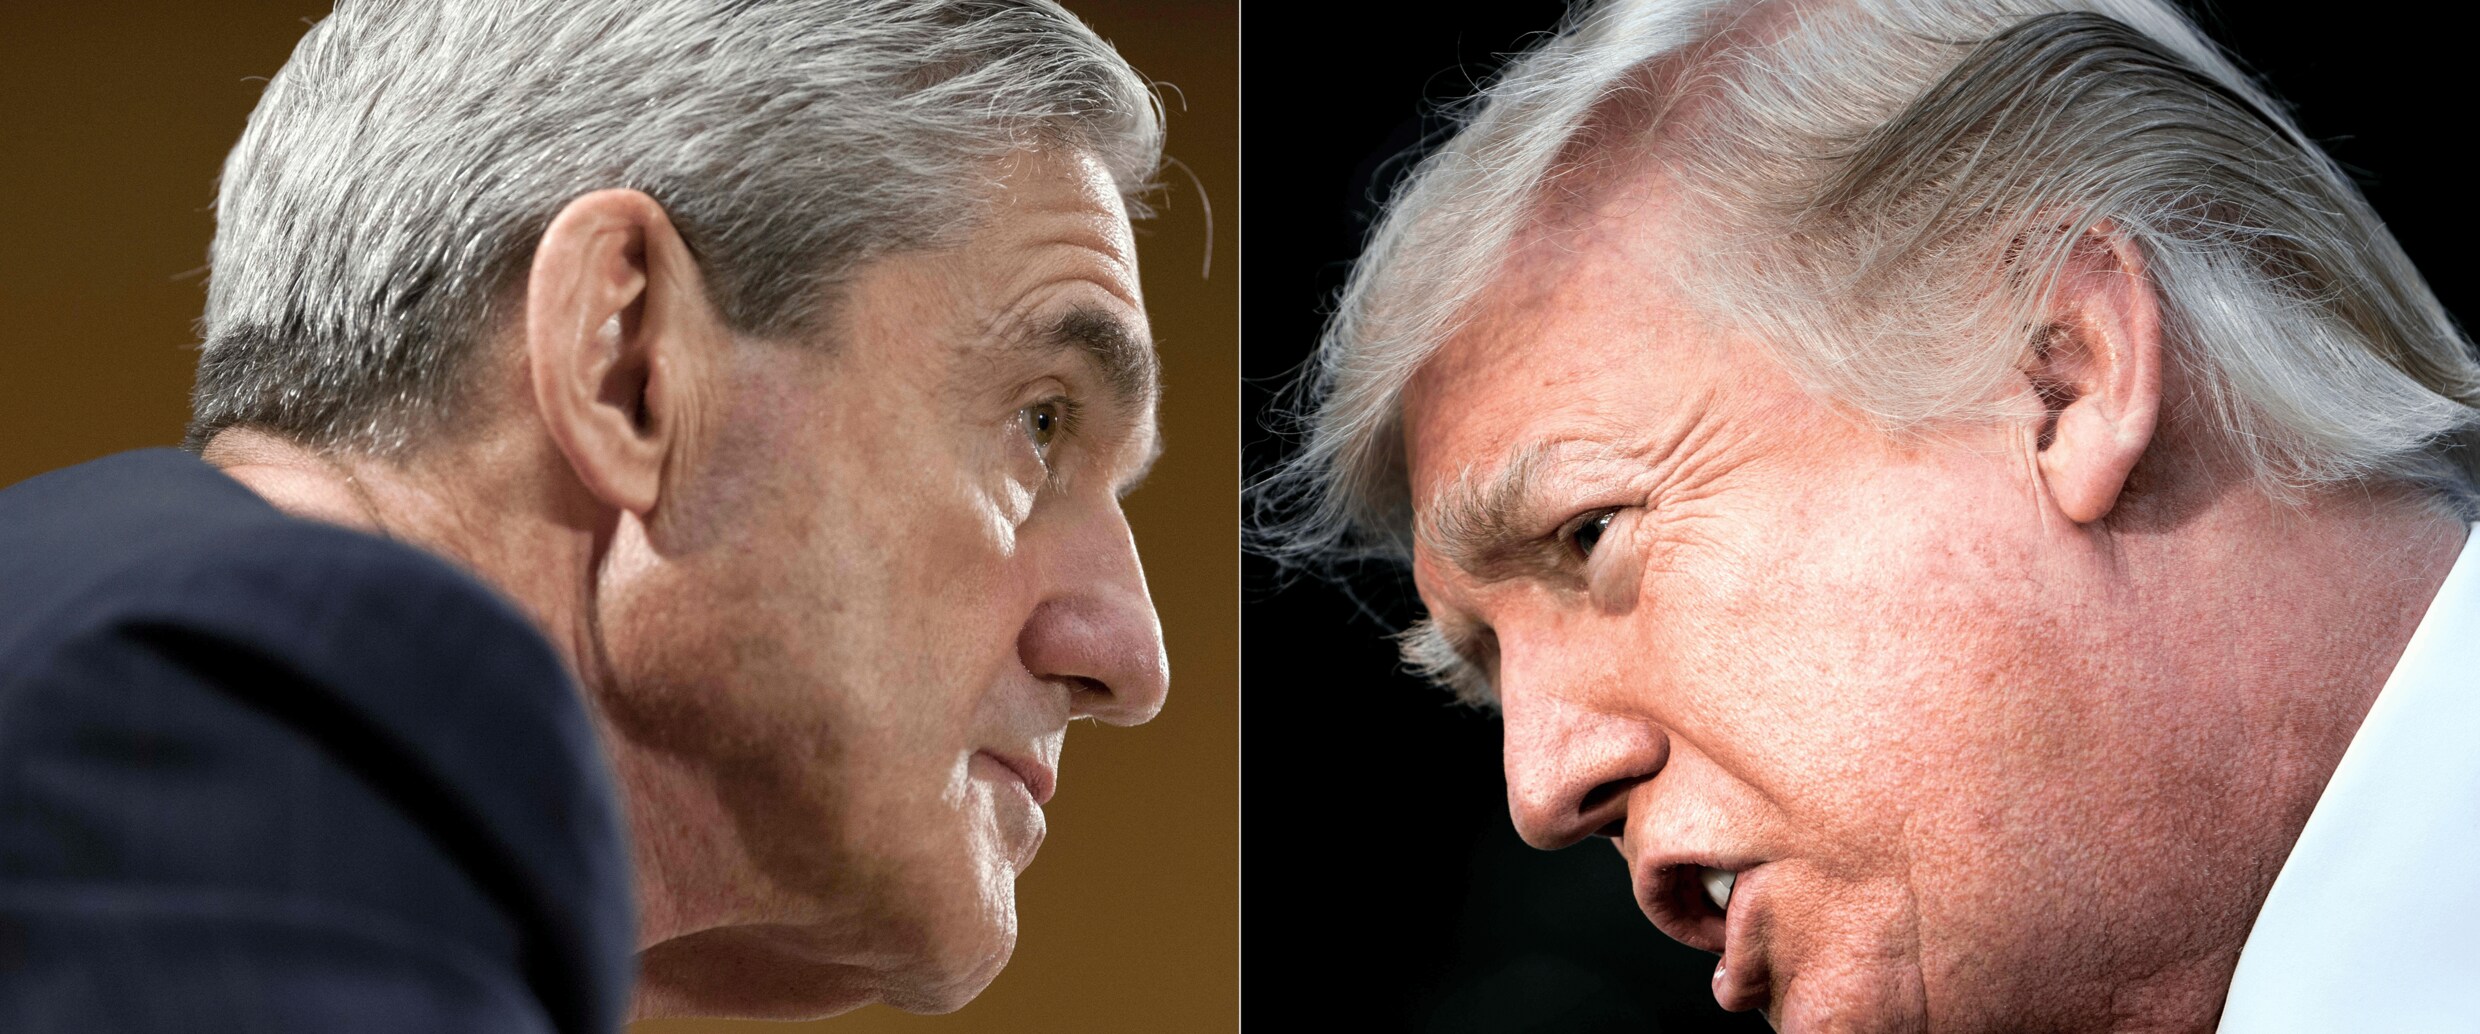 Trump noemt ondervraging door Mueller ‘onwaarschijnlijk’